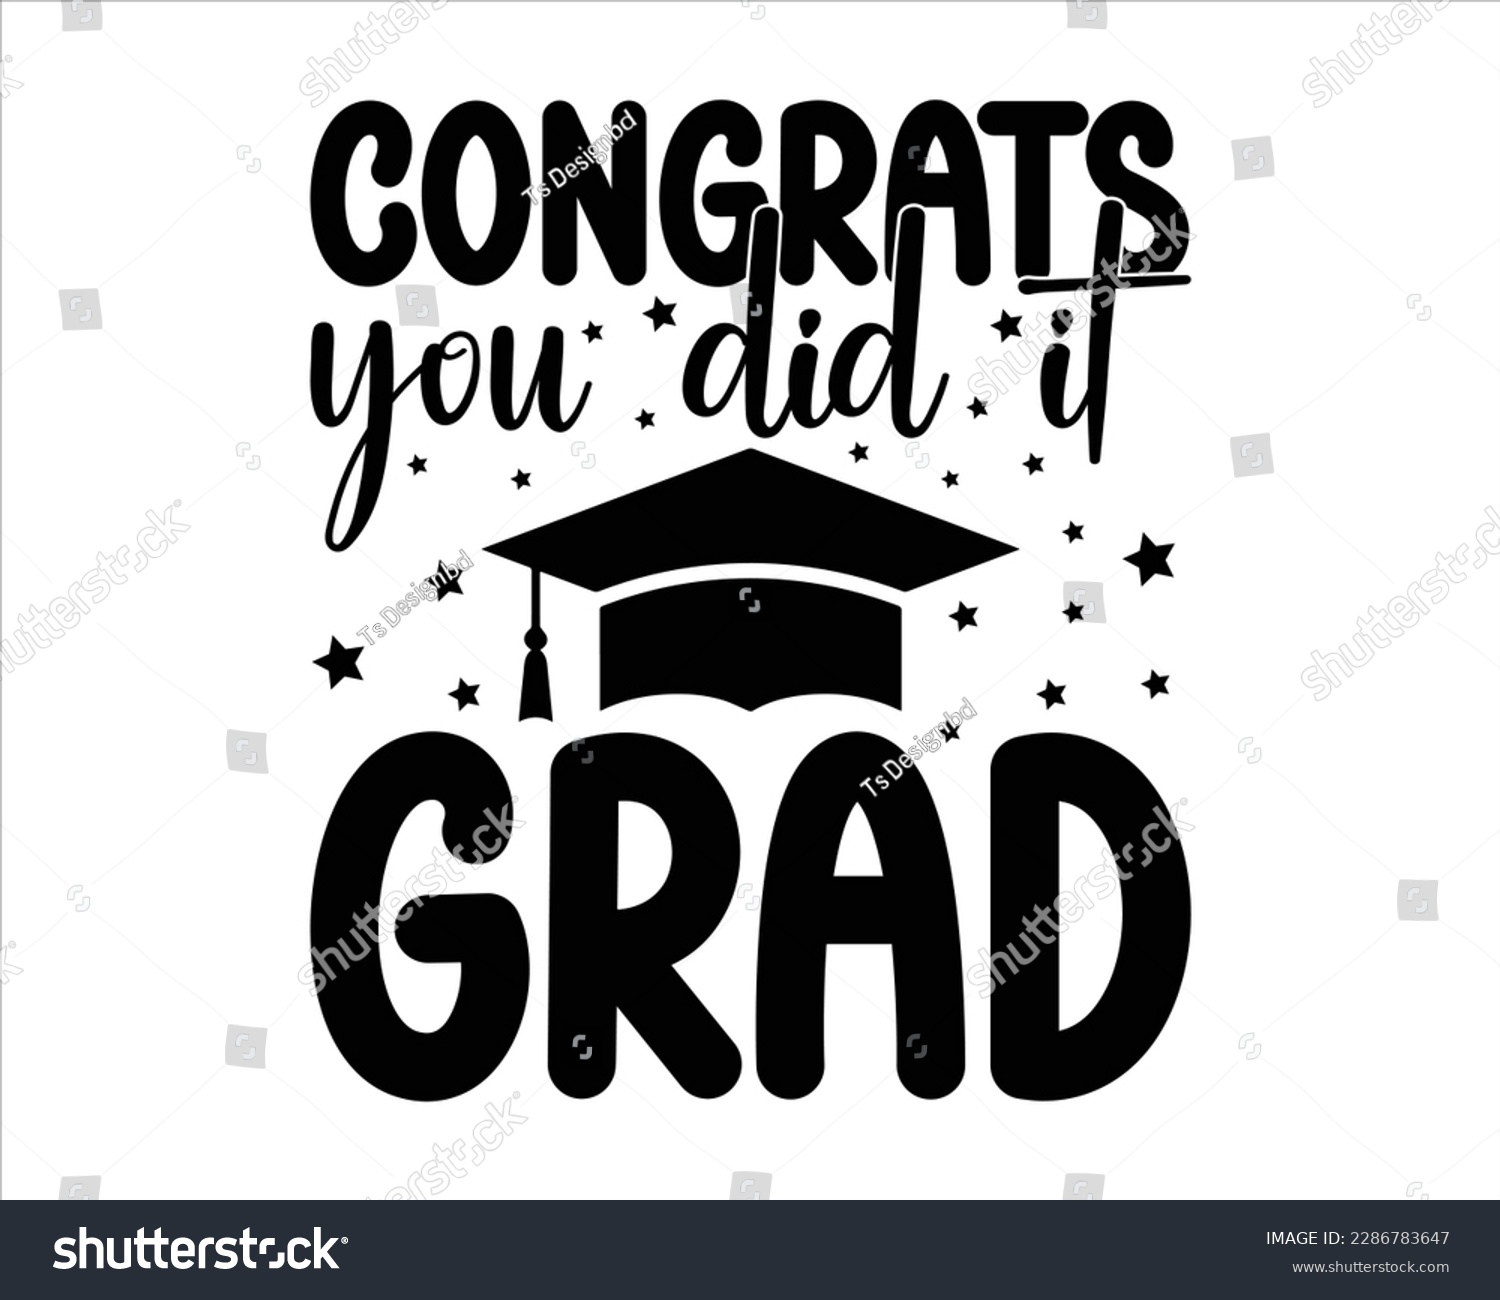 SVG of Congrats  You Did It Grad Svg Design,graduation svg design,Student graduate badges,congratulations school symbols,Graduation 2023 SVG,proud family of a 2023 graduate, Congrats grad svg